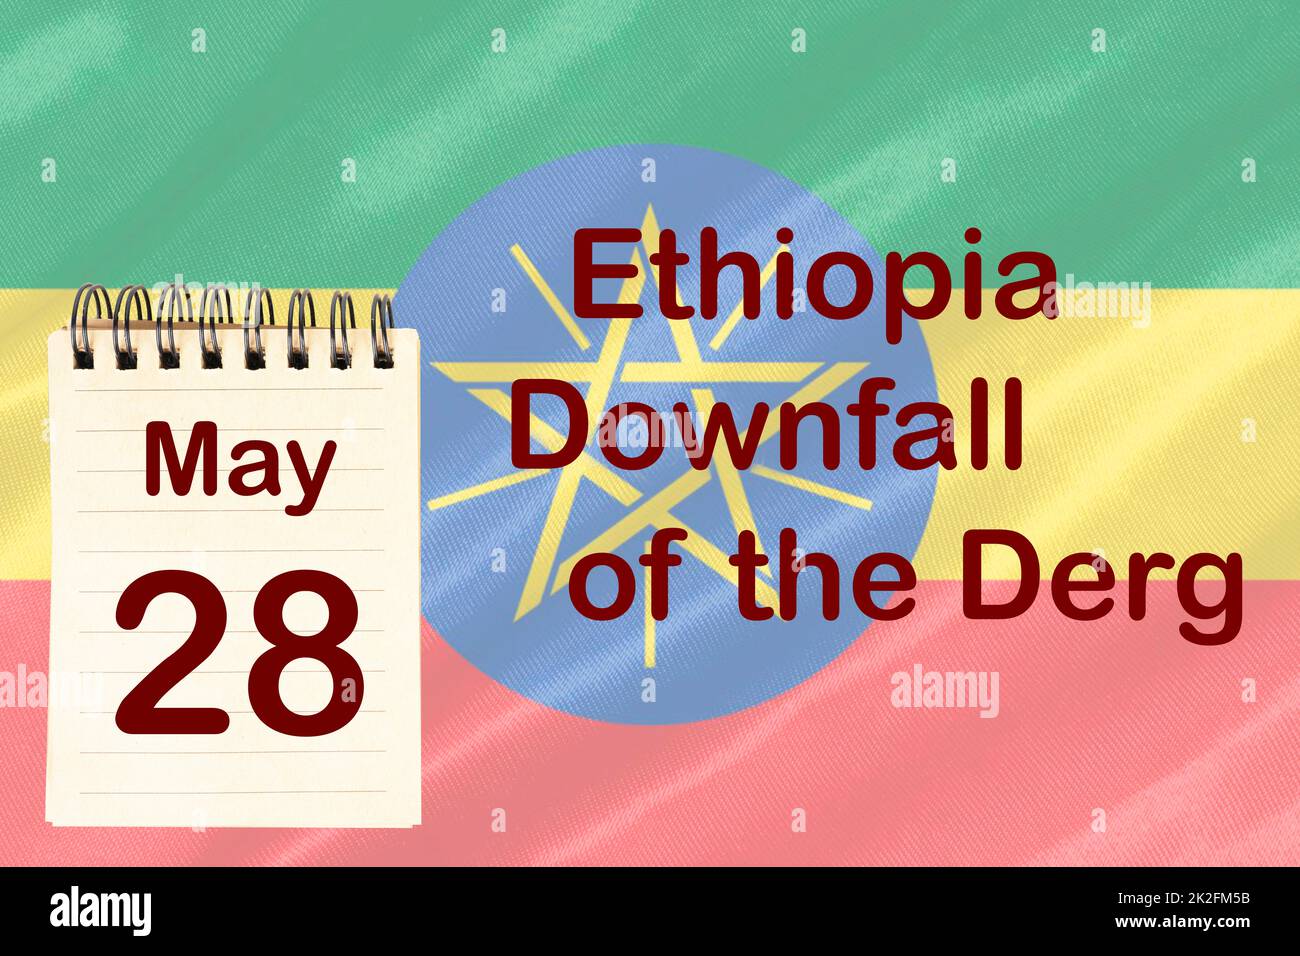 Der Untergang des Derg in Äthiopien Stockfoto